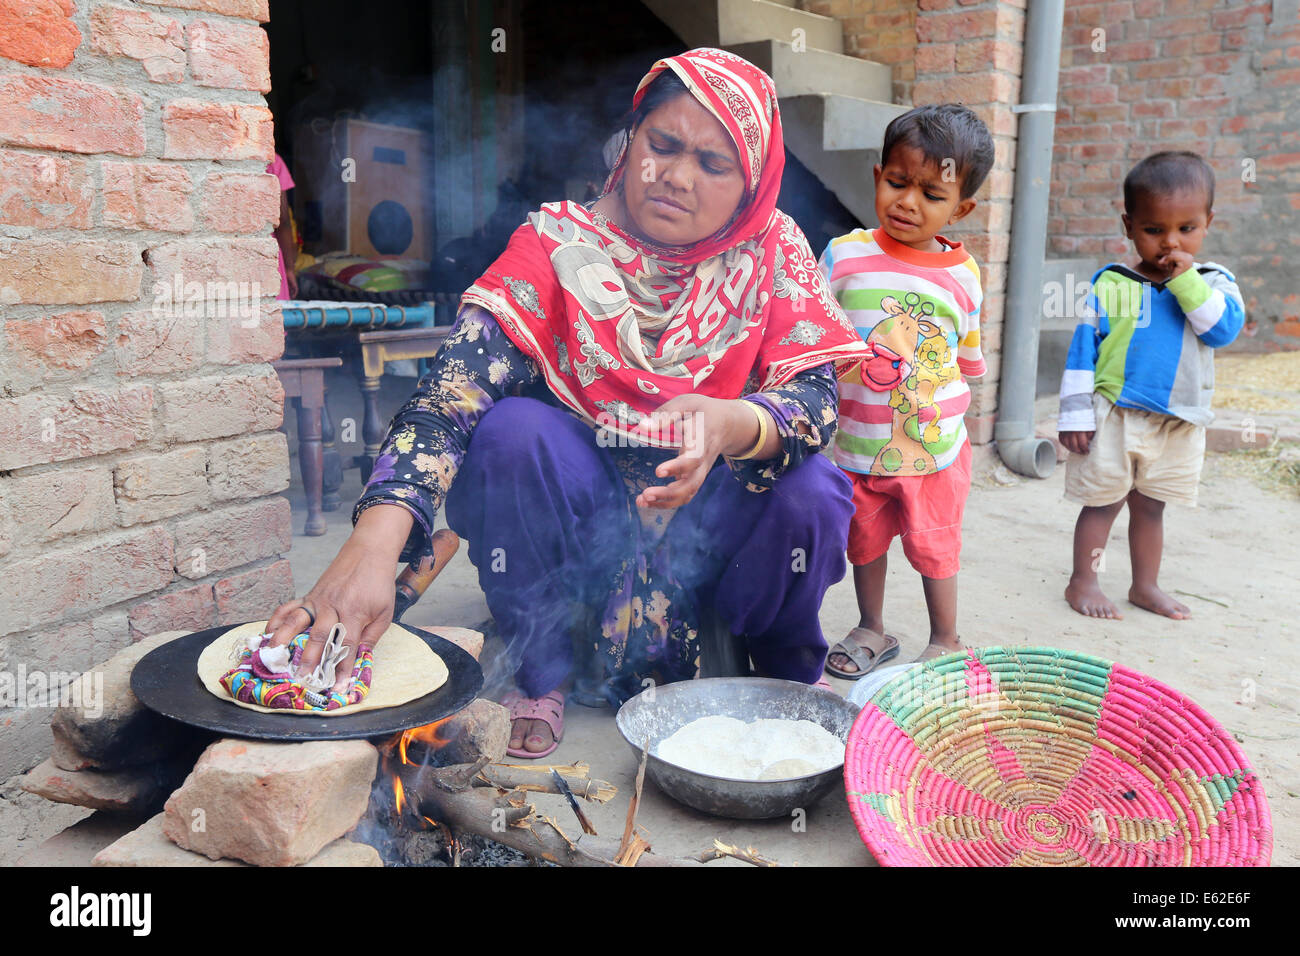 Frau in traditioneller Kleidung Roti Brot (auch bekannt als Chapati) am offenen Feuer backen. Khushpur Dorf, Provinz Punjab, Pakistan Stockfoto